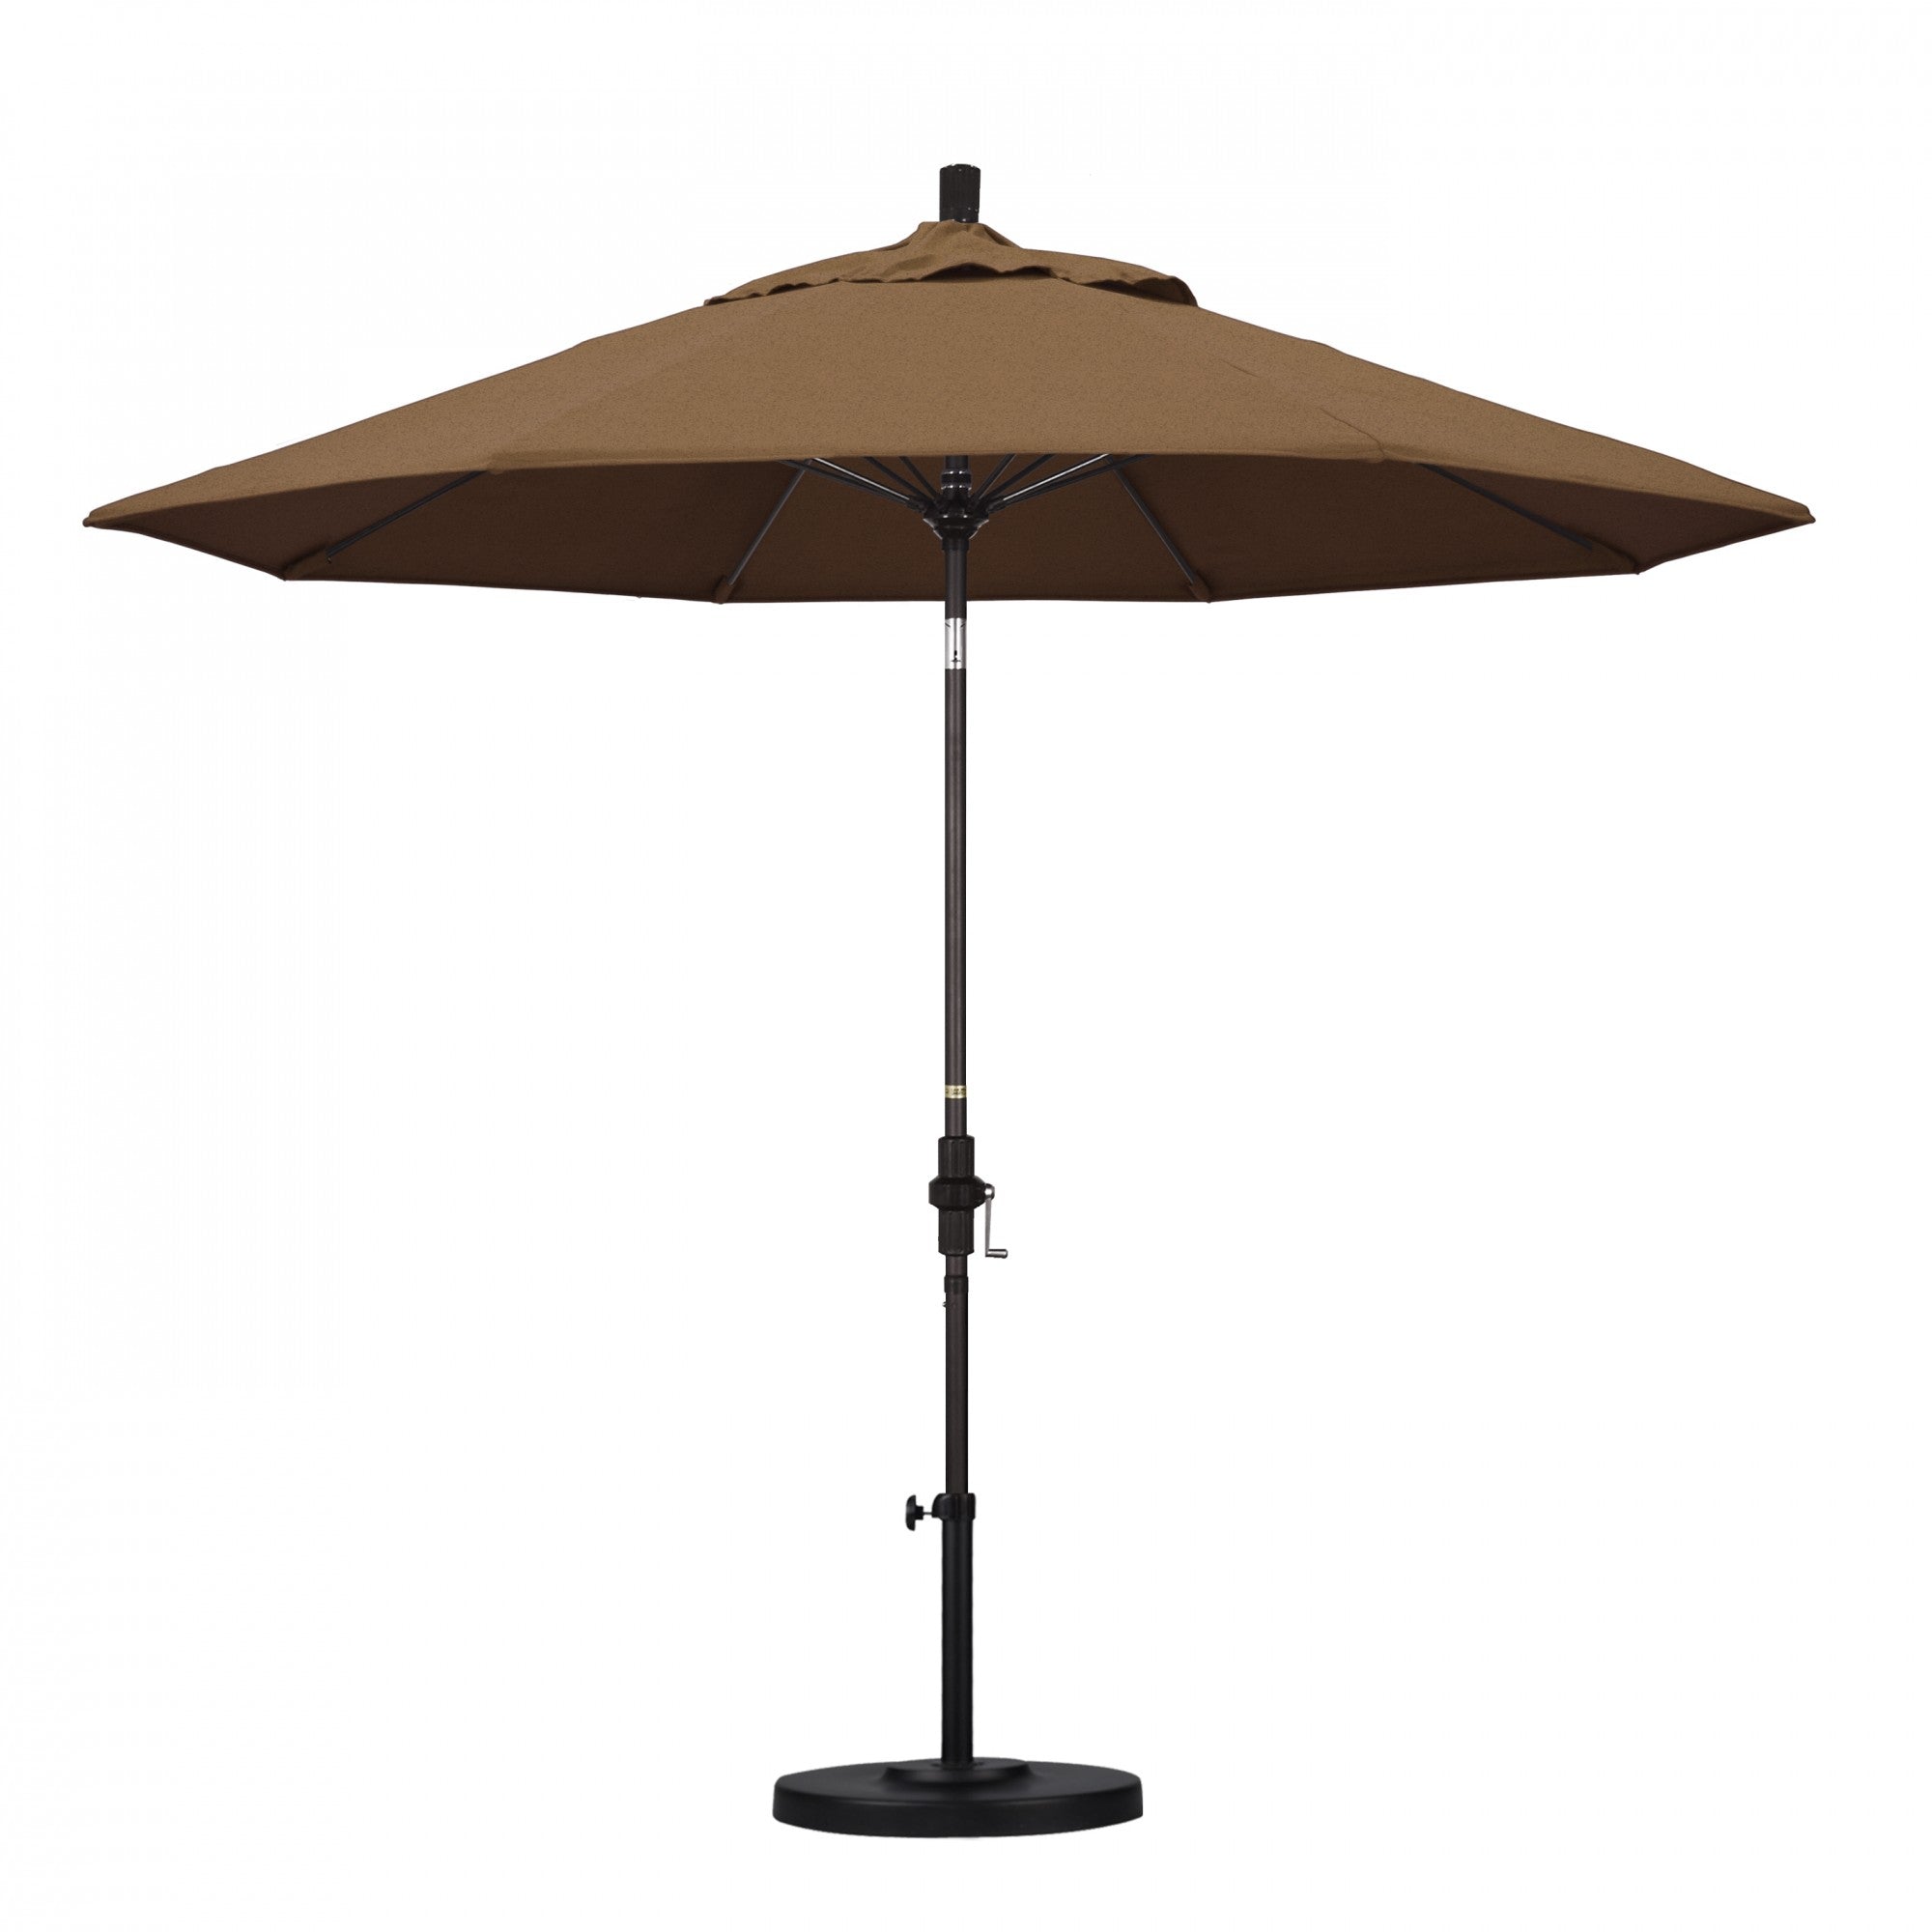 California Umbrella - 9' - Patio Umbrella Umbrella - Aluminum Pole - Teak - Sunbrella  - GSCUF908117-5488